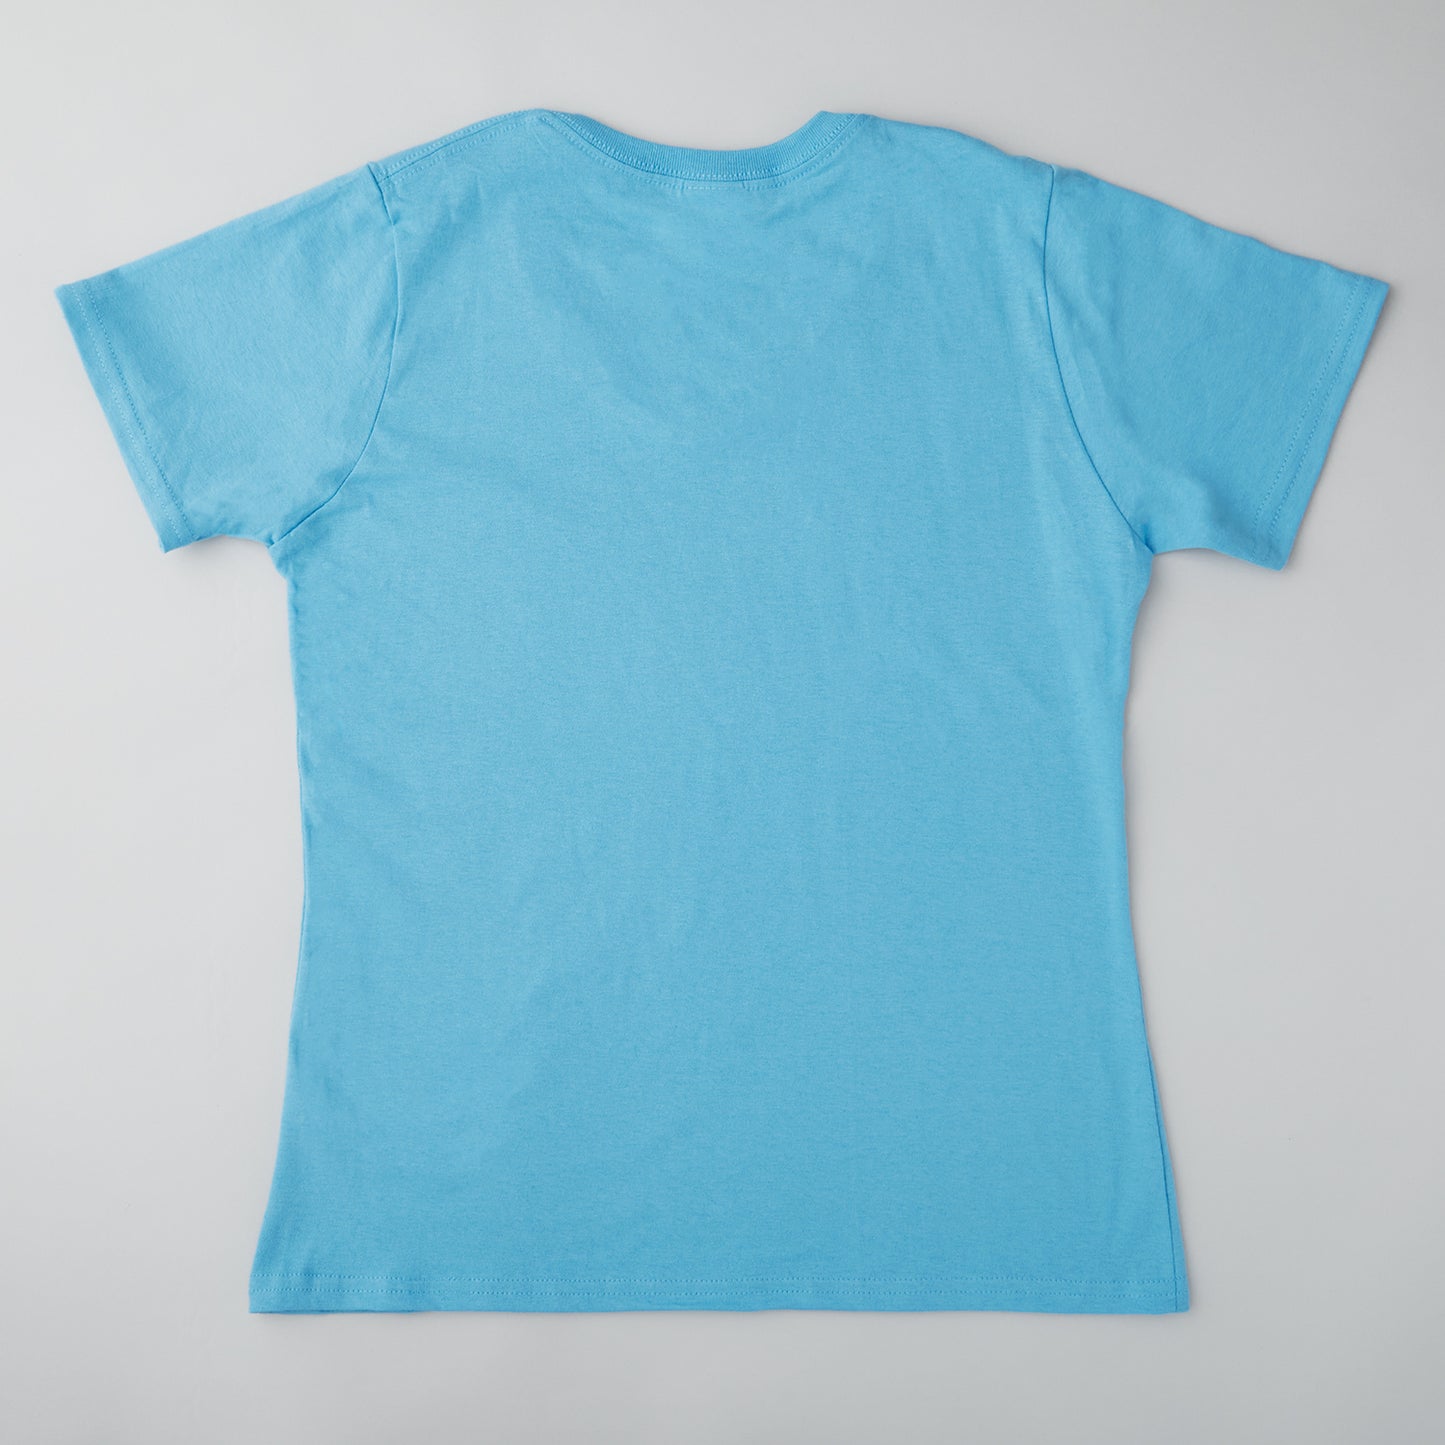 Quiltmaker T-shirt - Aquatic Blue XL Alternative View #1